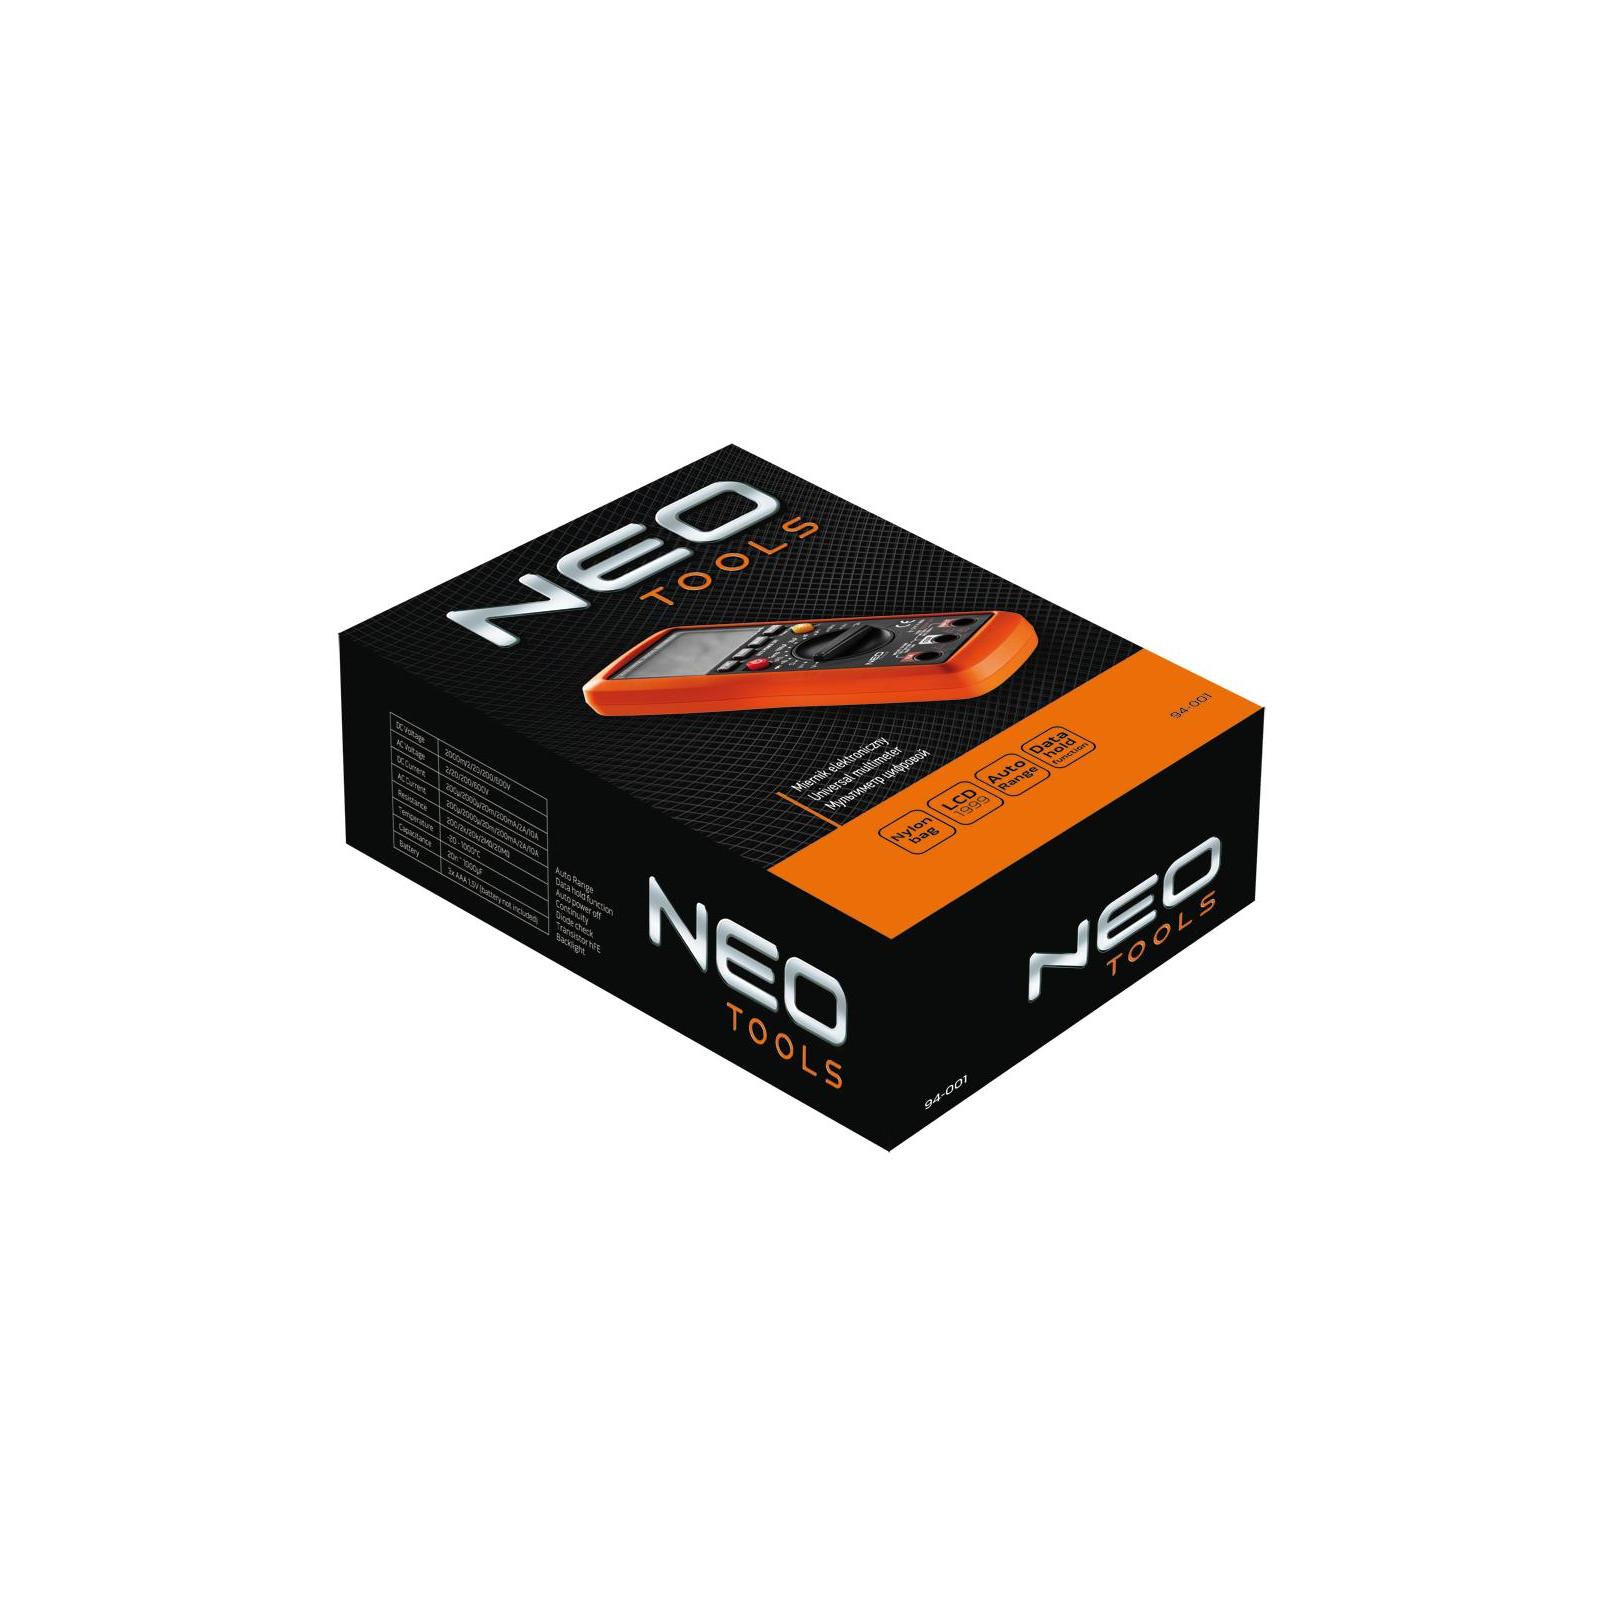 Цифровой мультиметр Neo Tools 94-001 изображение 2